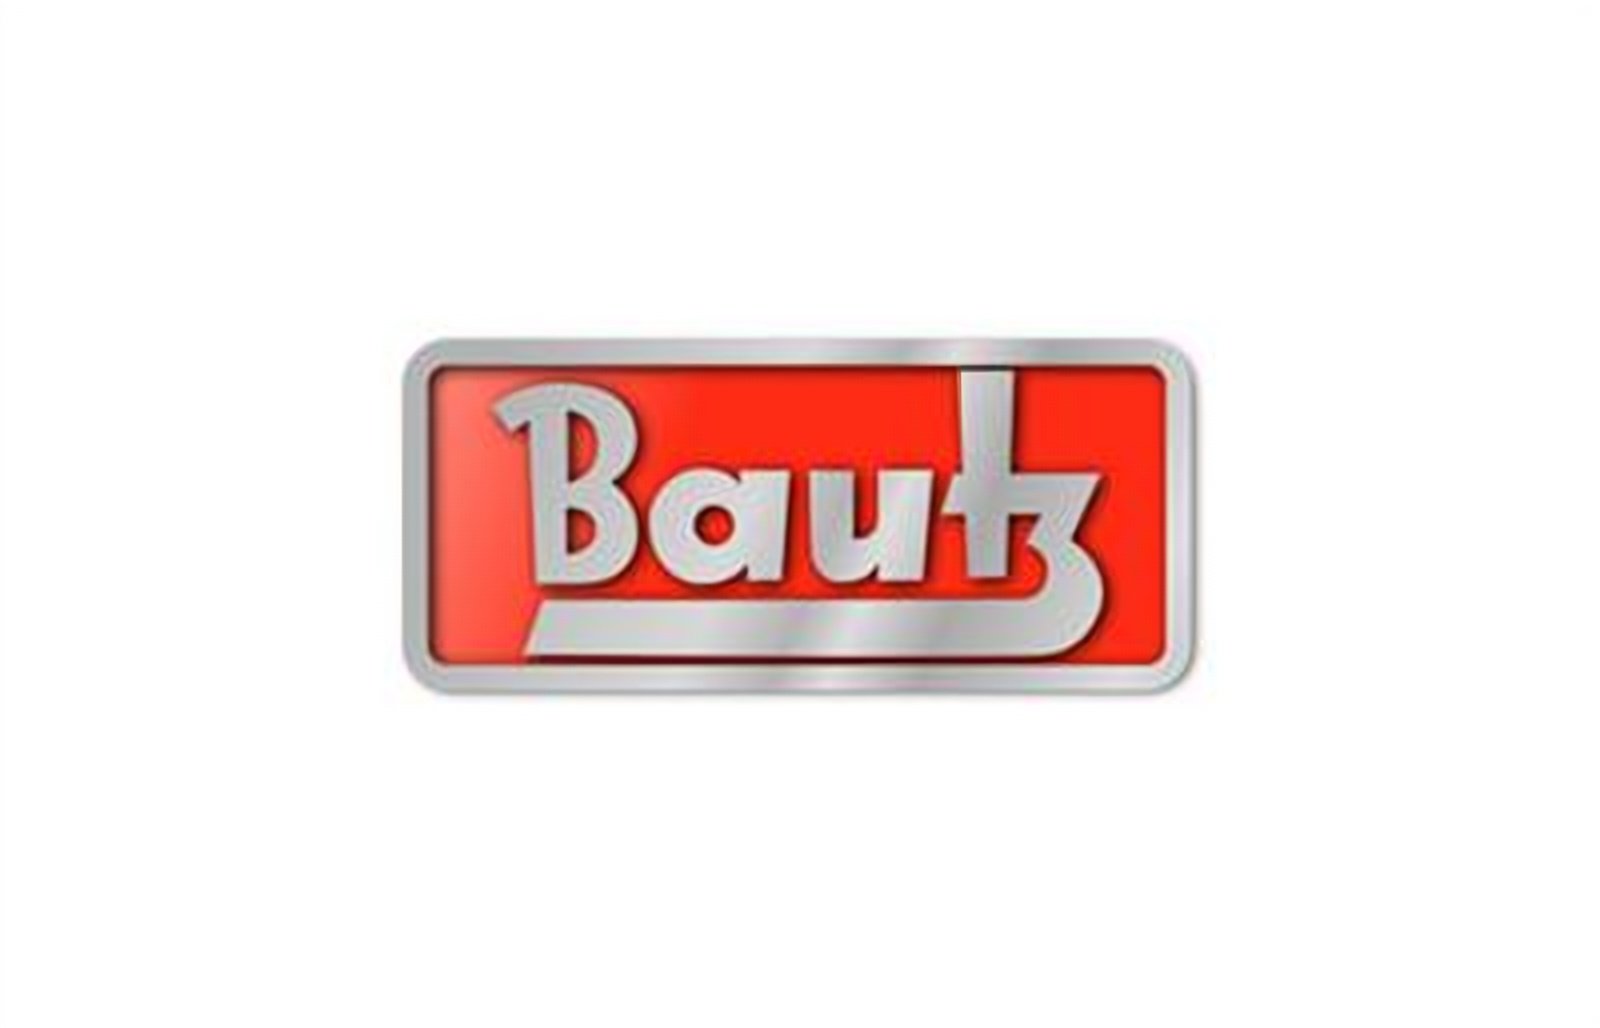 logo della collezione batterie bautz di puntobatterie